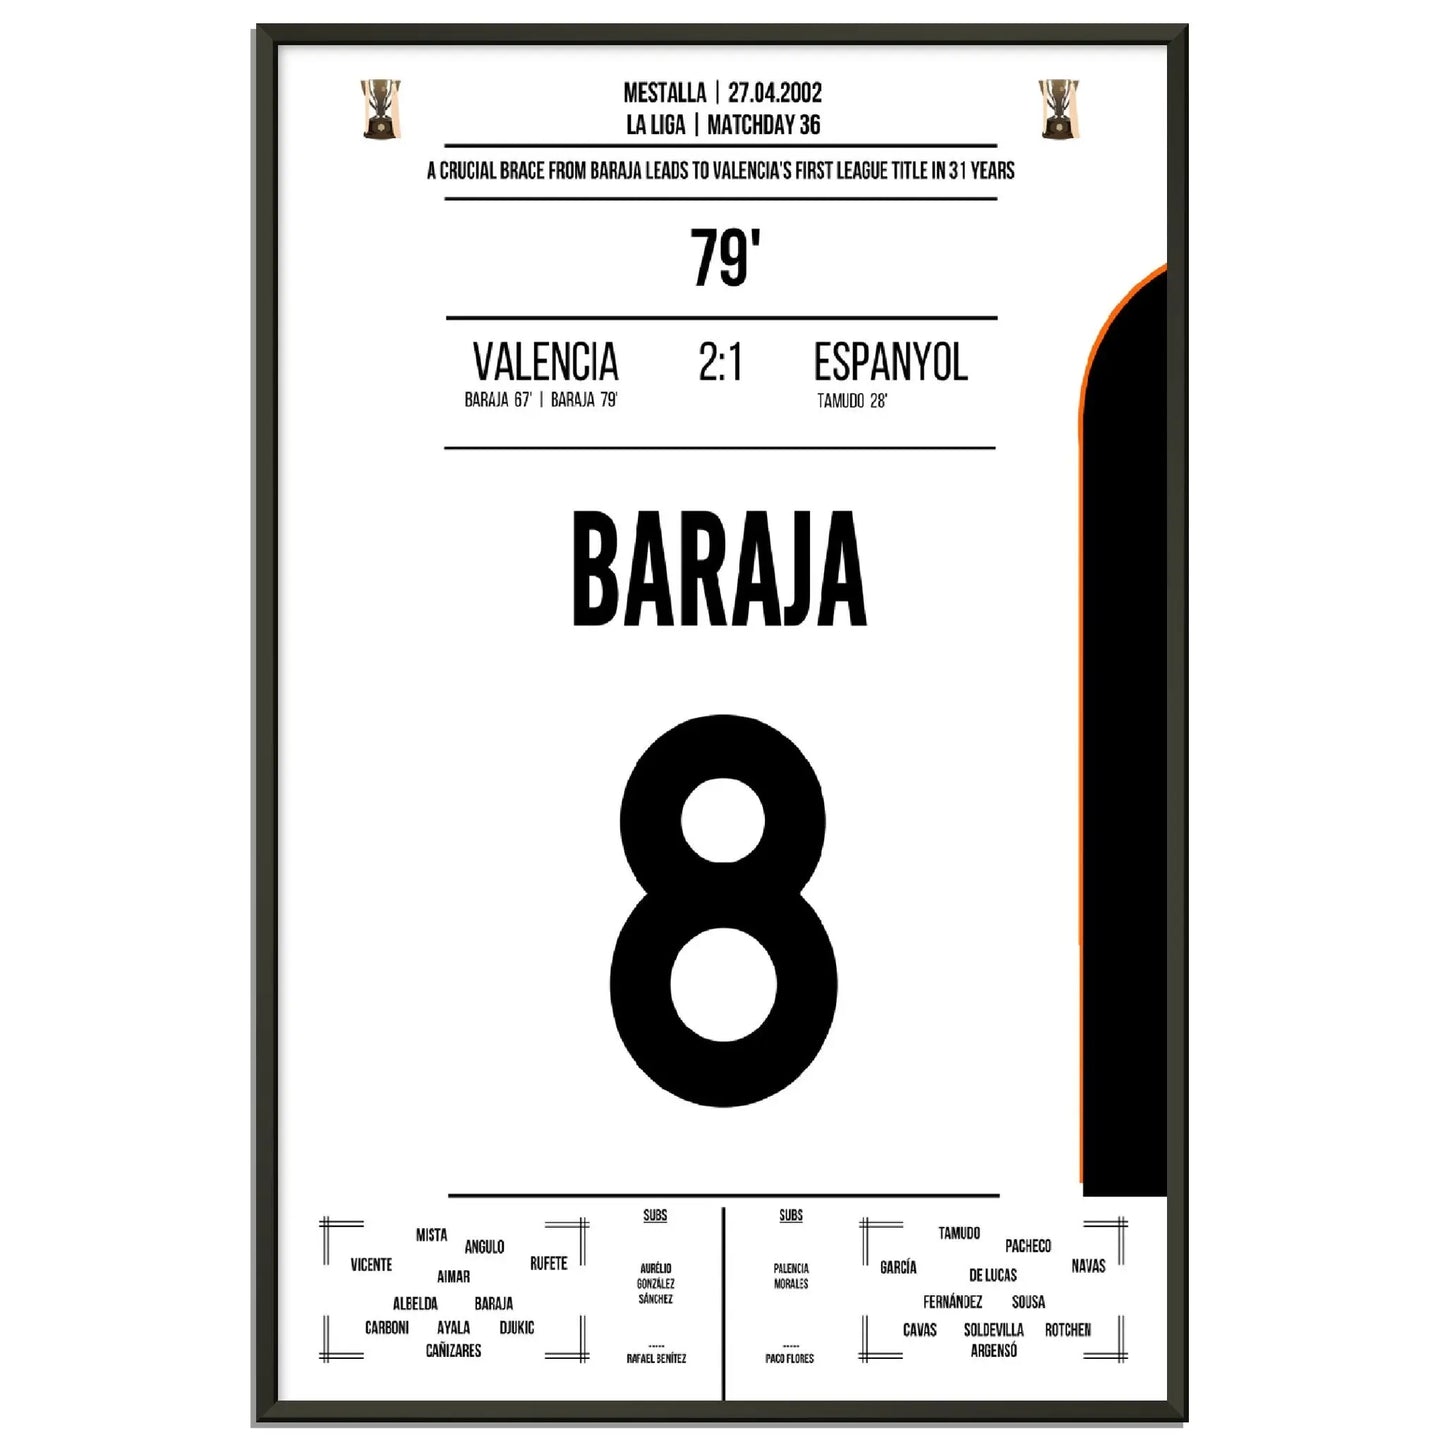 Baraja dreht das Spiel gegen Espanyol auf dem Weg zu Valencia's erster Meisterschaft nach 31 Jahren 